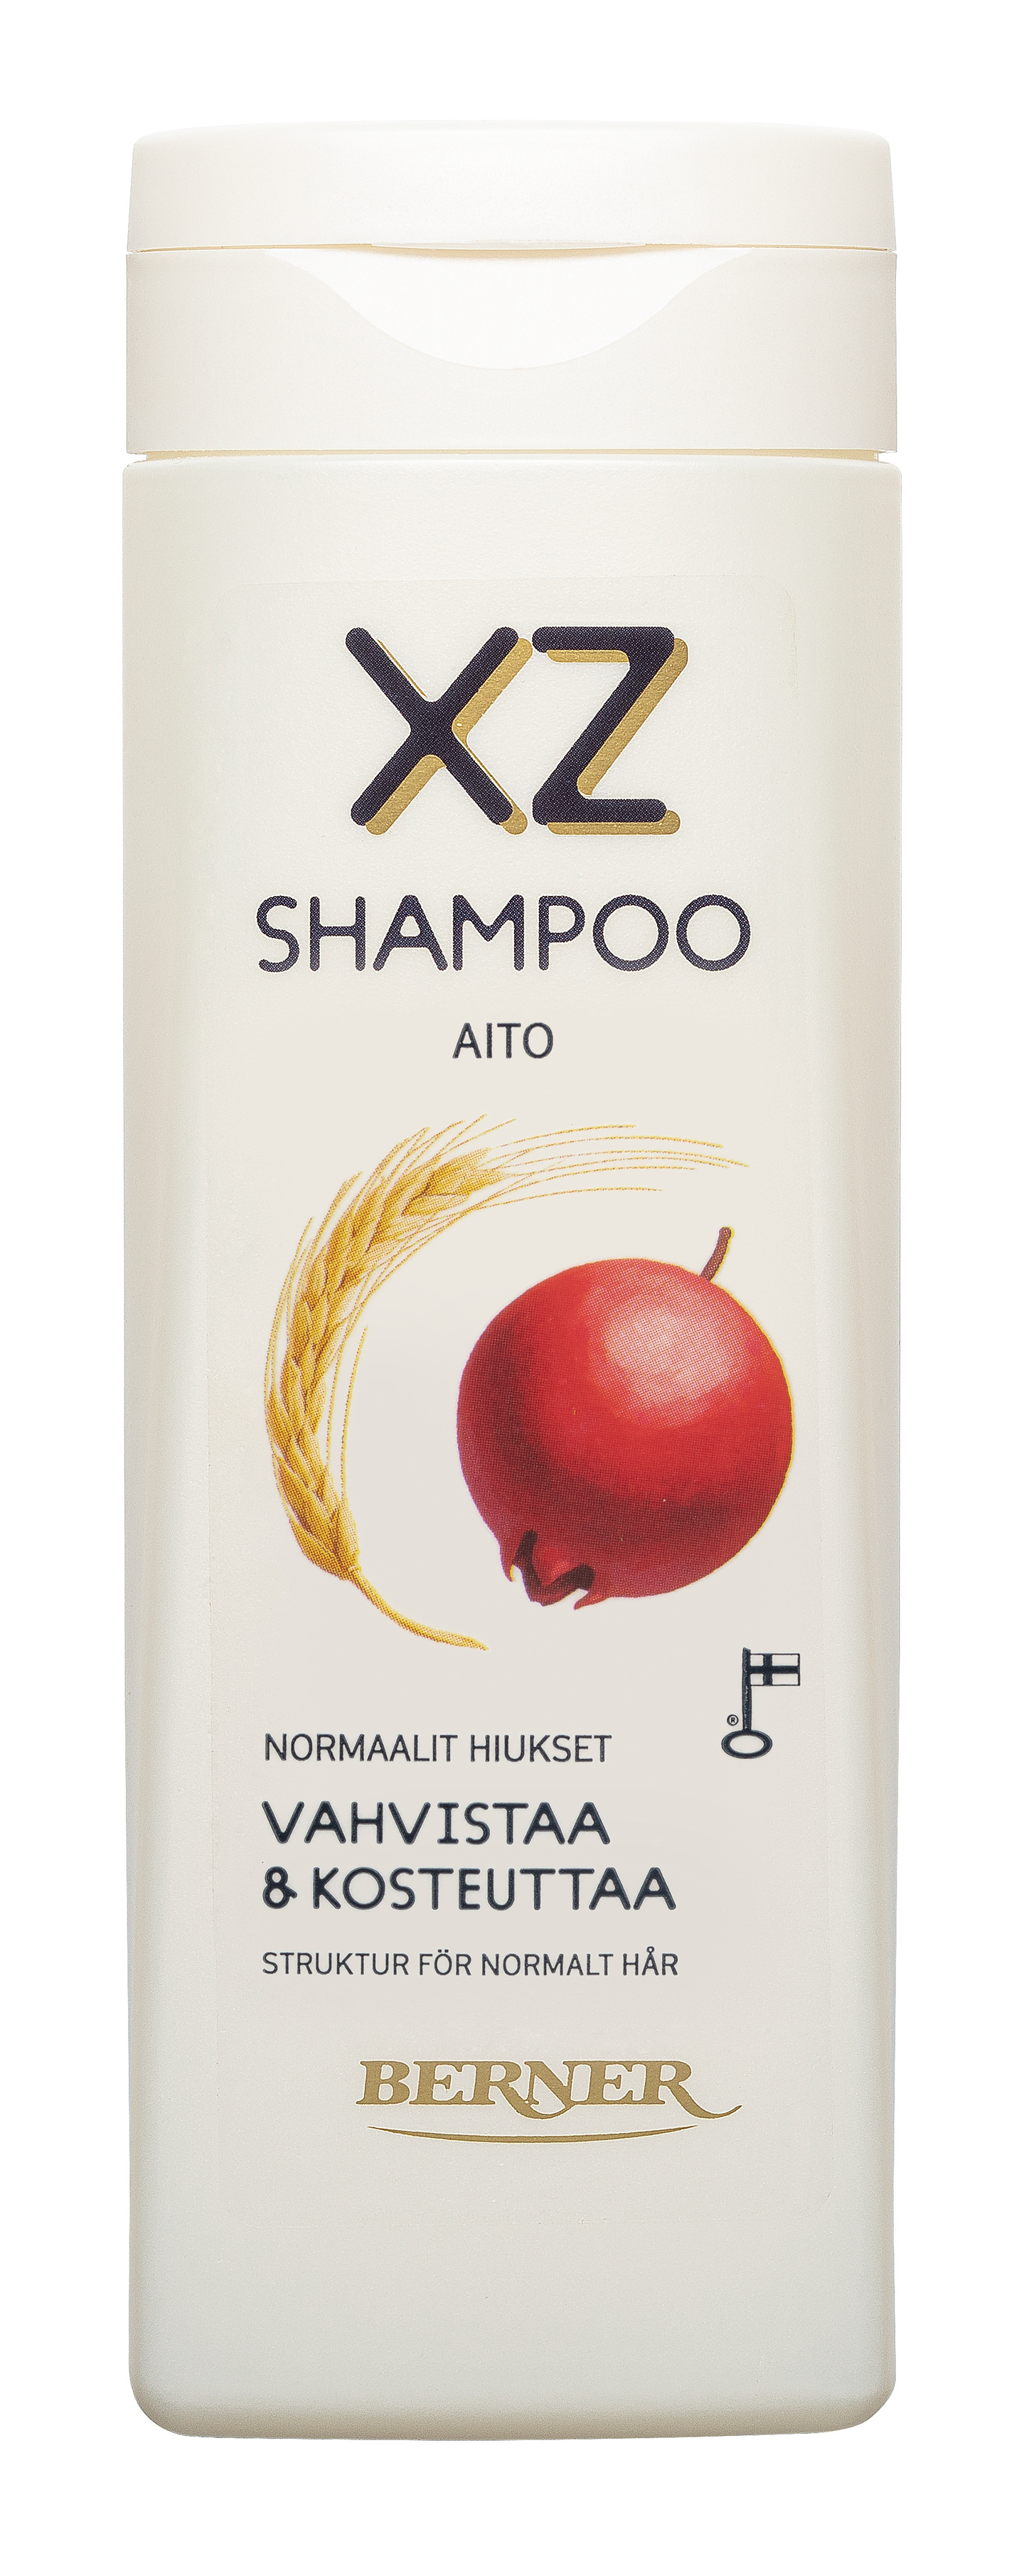 XZ aito shampoo 250ml kosteutta ja rakennetta